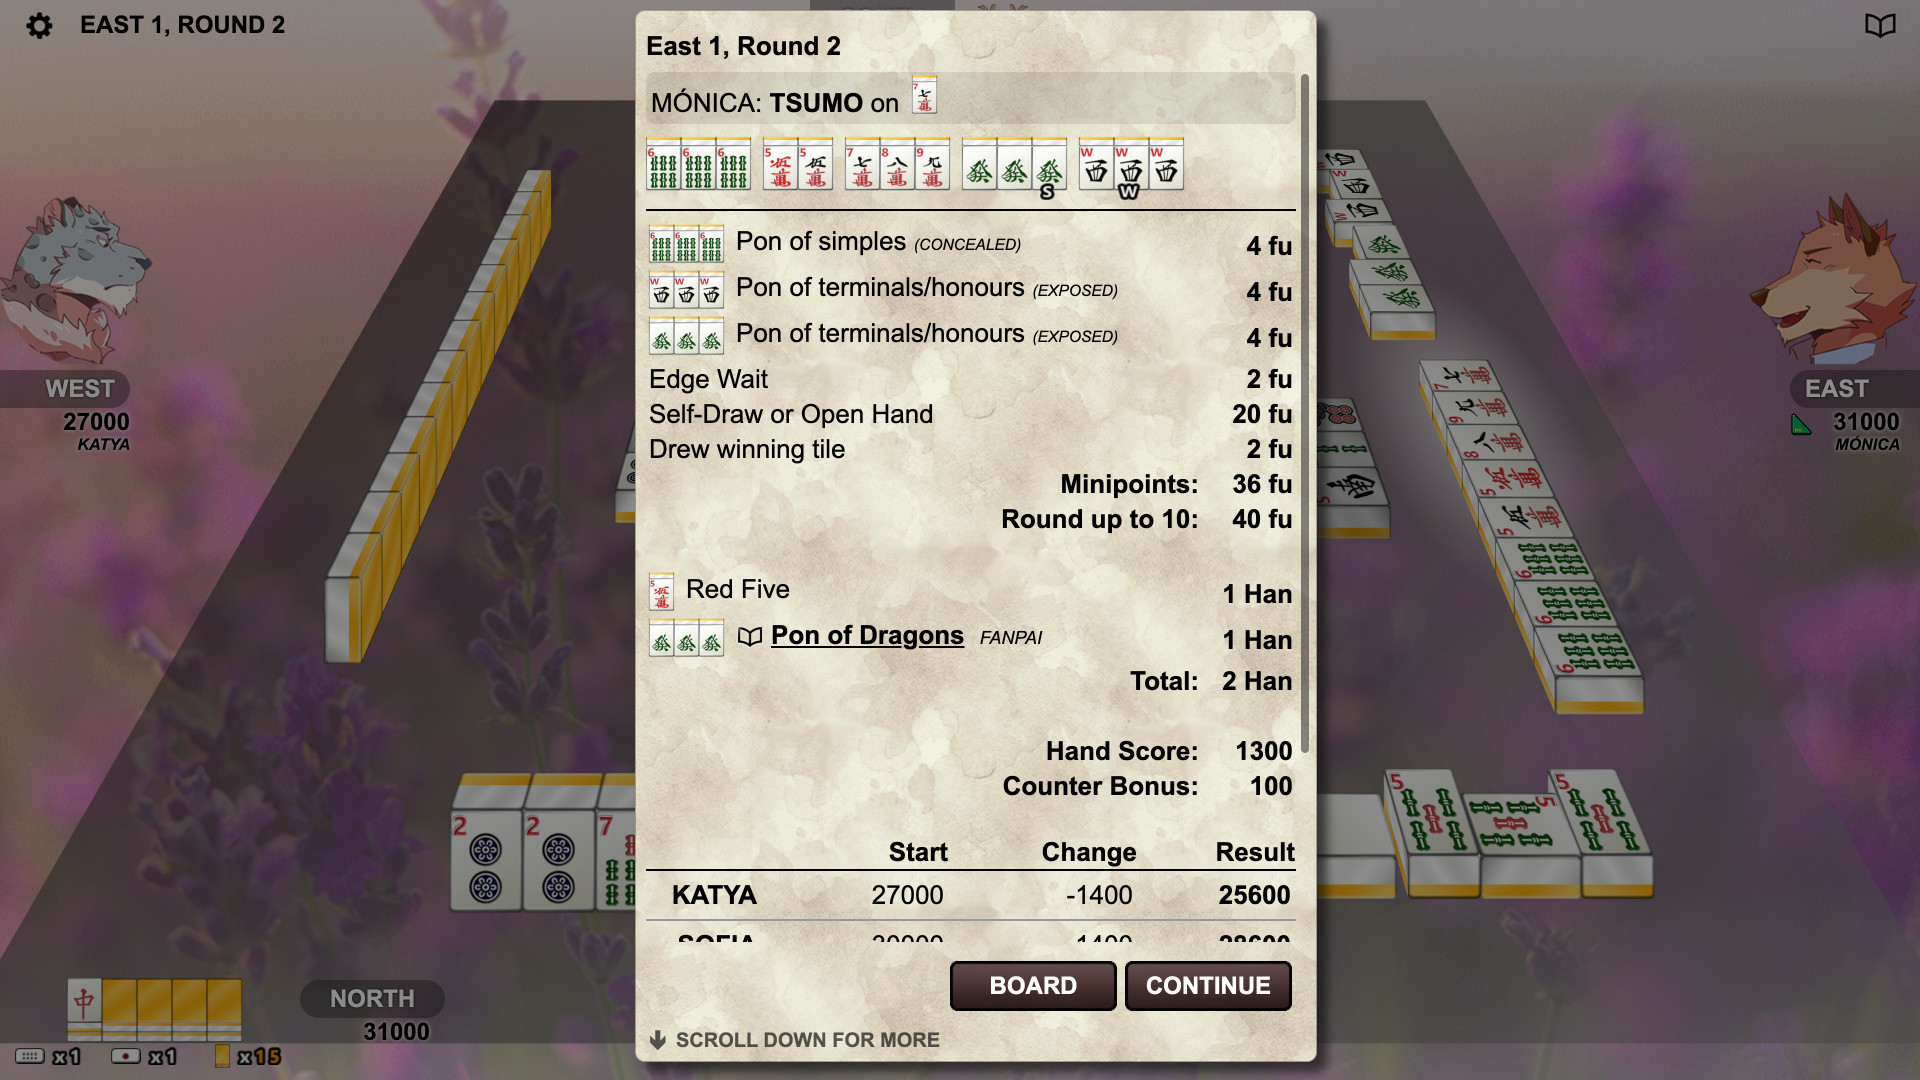 兽人麻将 / Kemono Mahjong